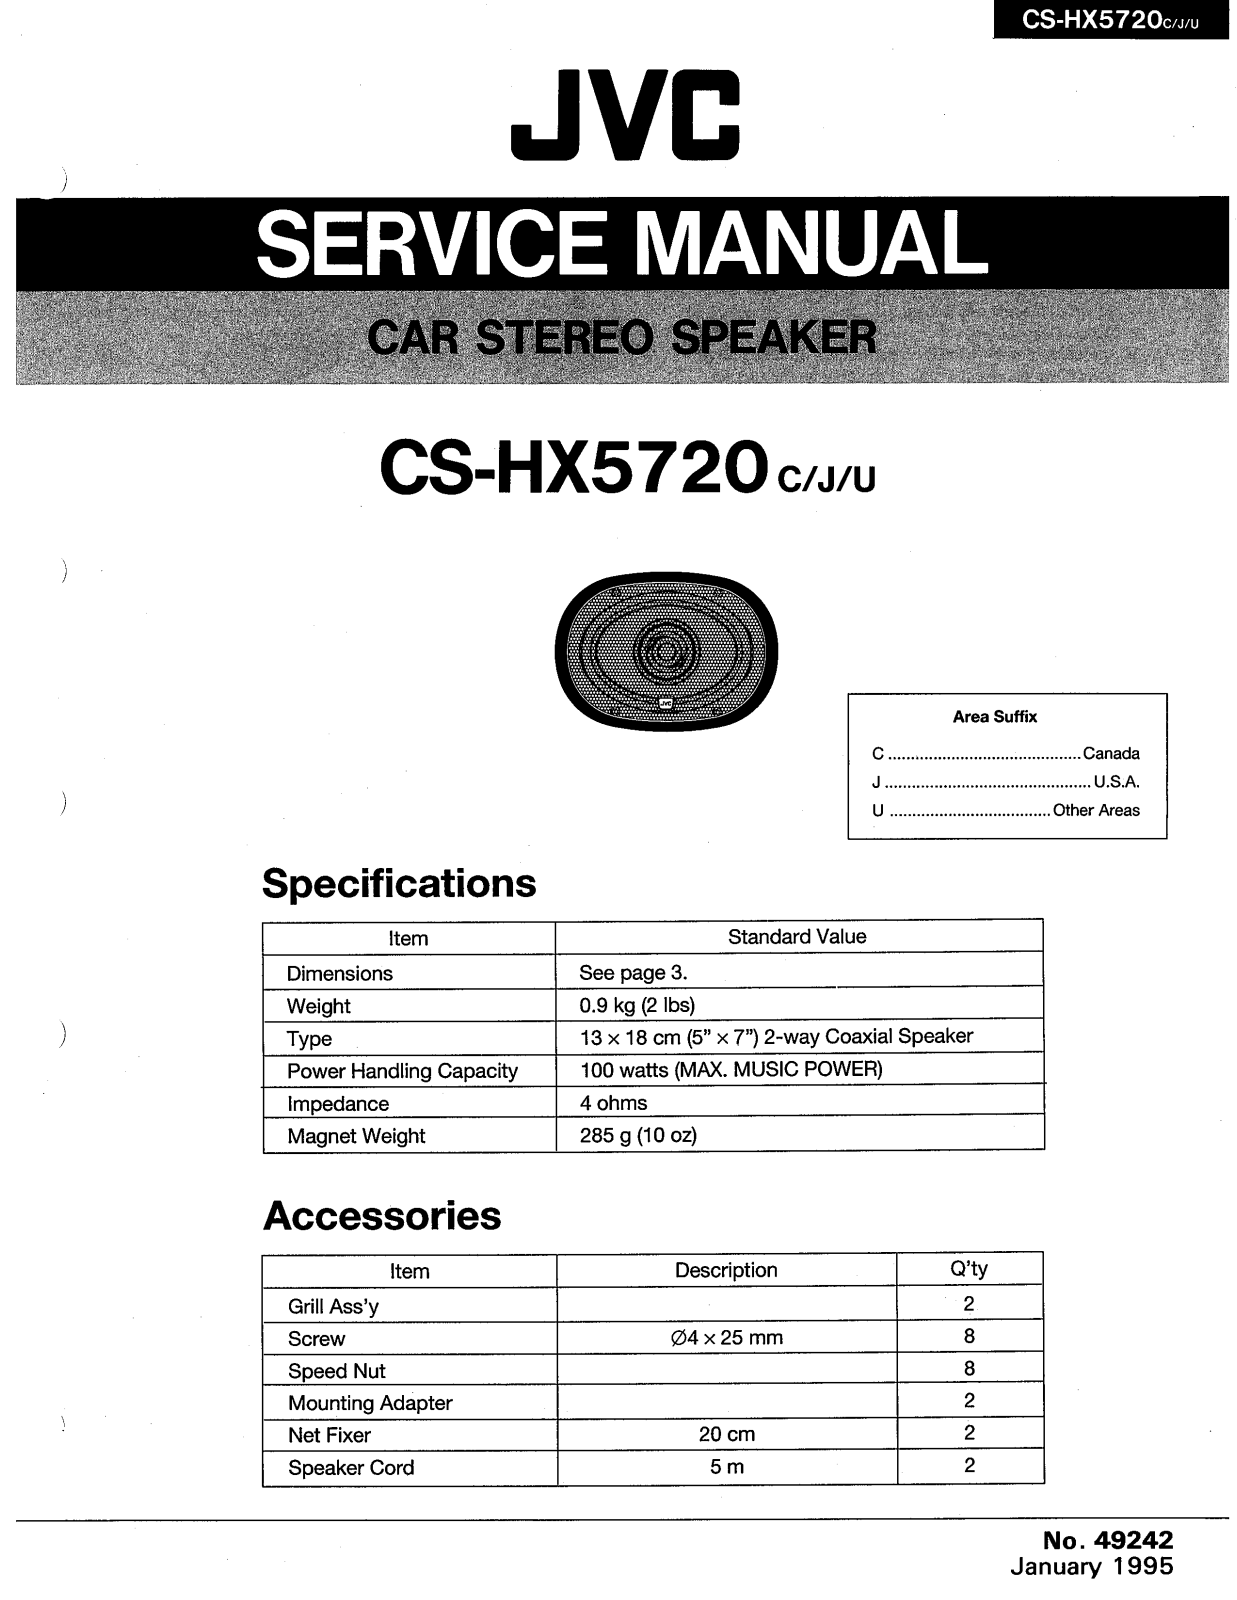 JVC CS-HX5720C, CS-HX5720J, CS-HX5720U Service Manual